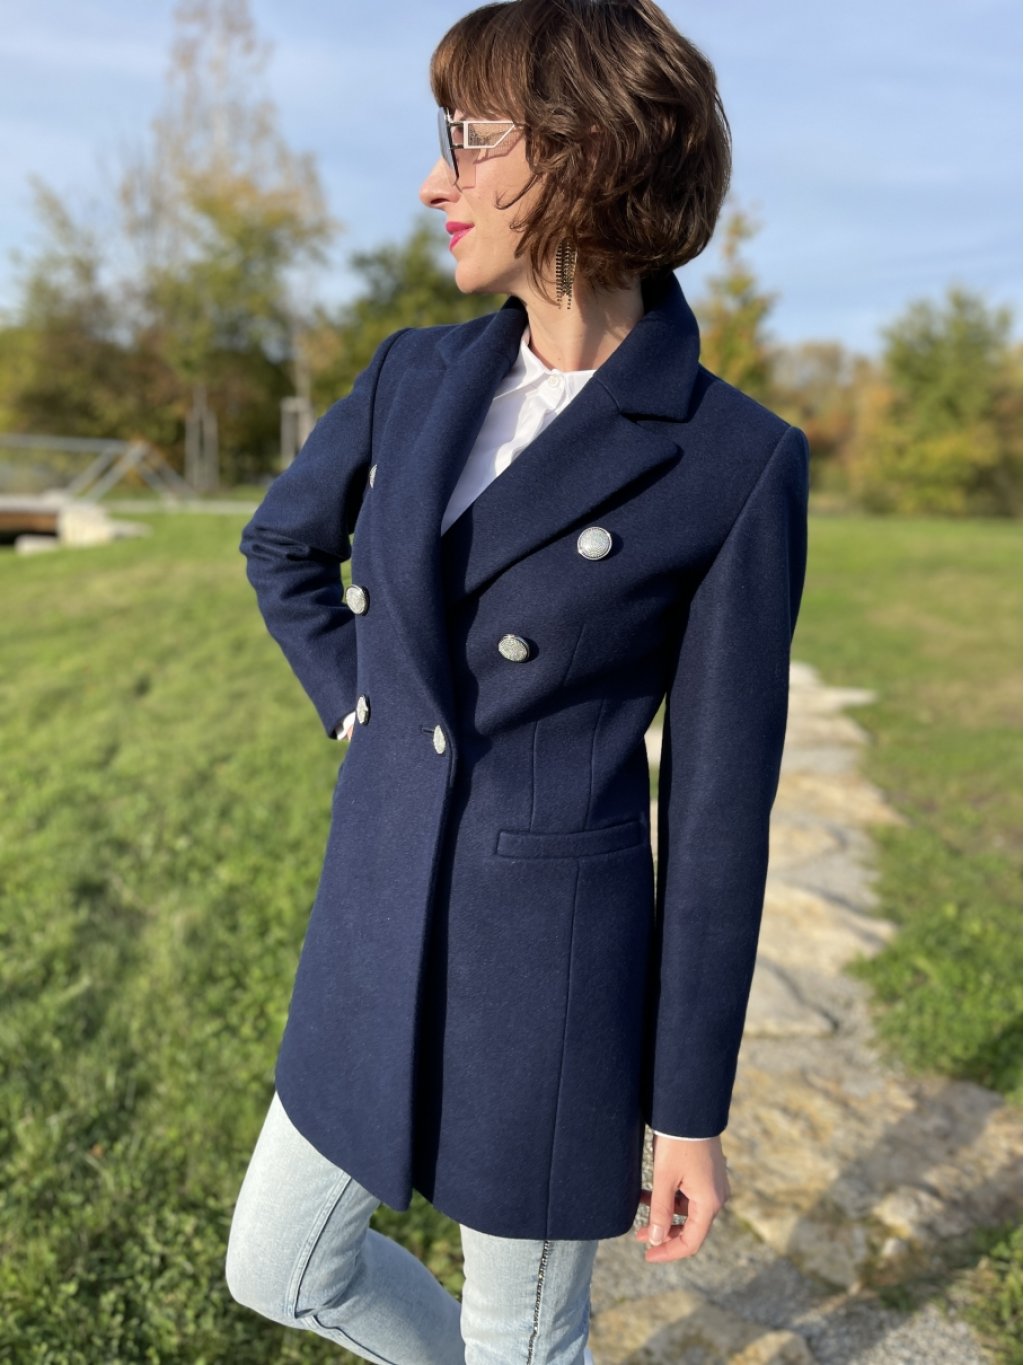 Kabát La Gabriella 5338-425 tmavě modrý krátký styl blazer